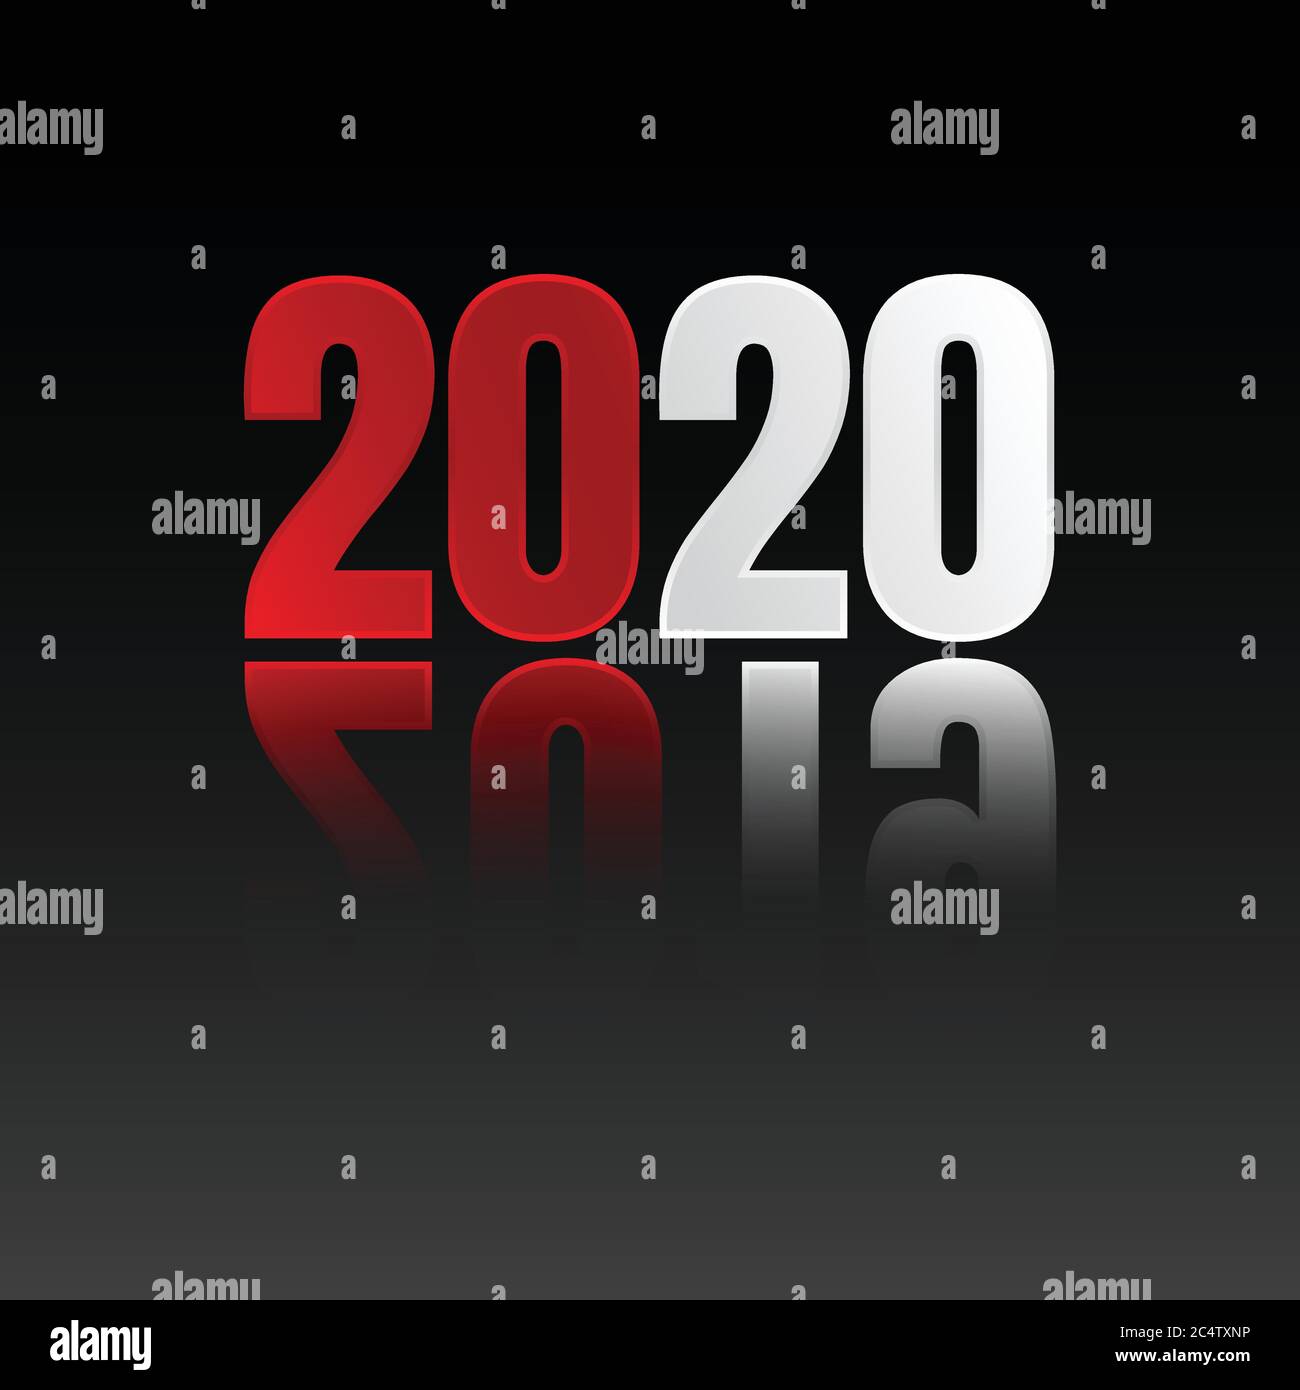 Les symboles rouge et blanc 2020 changent le texte de 2019 symboles. Fond ou affiche sur fond noir. Illustration vectorielle EPS.8 EPS.10 Illustration de Vecteur